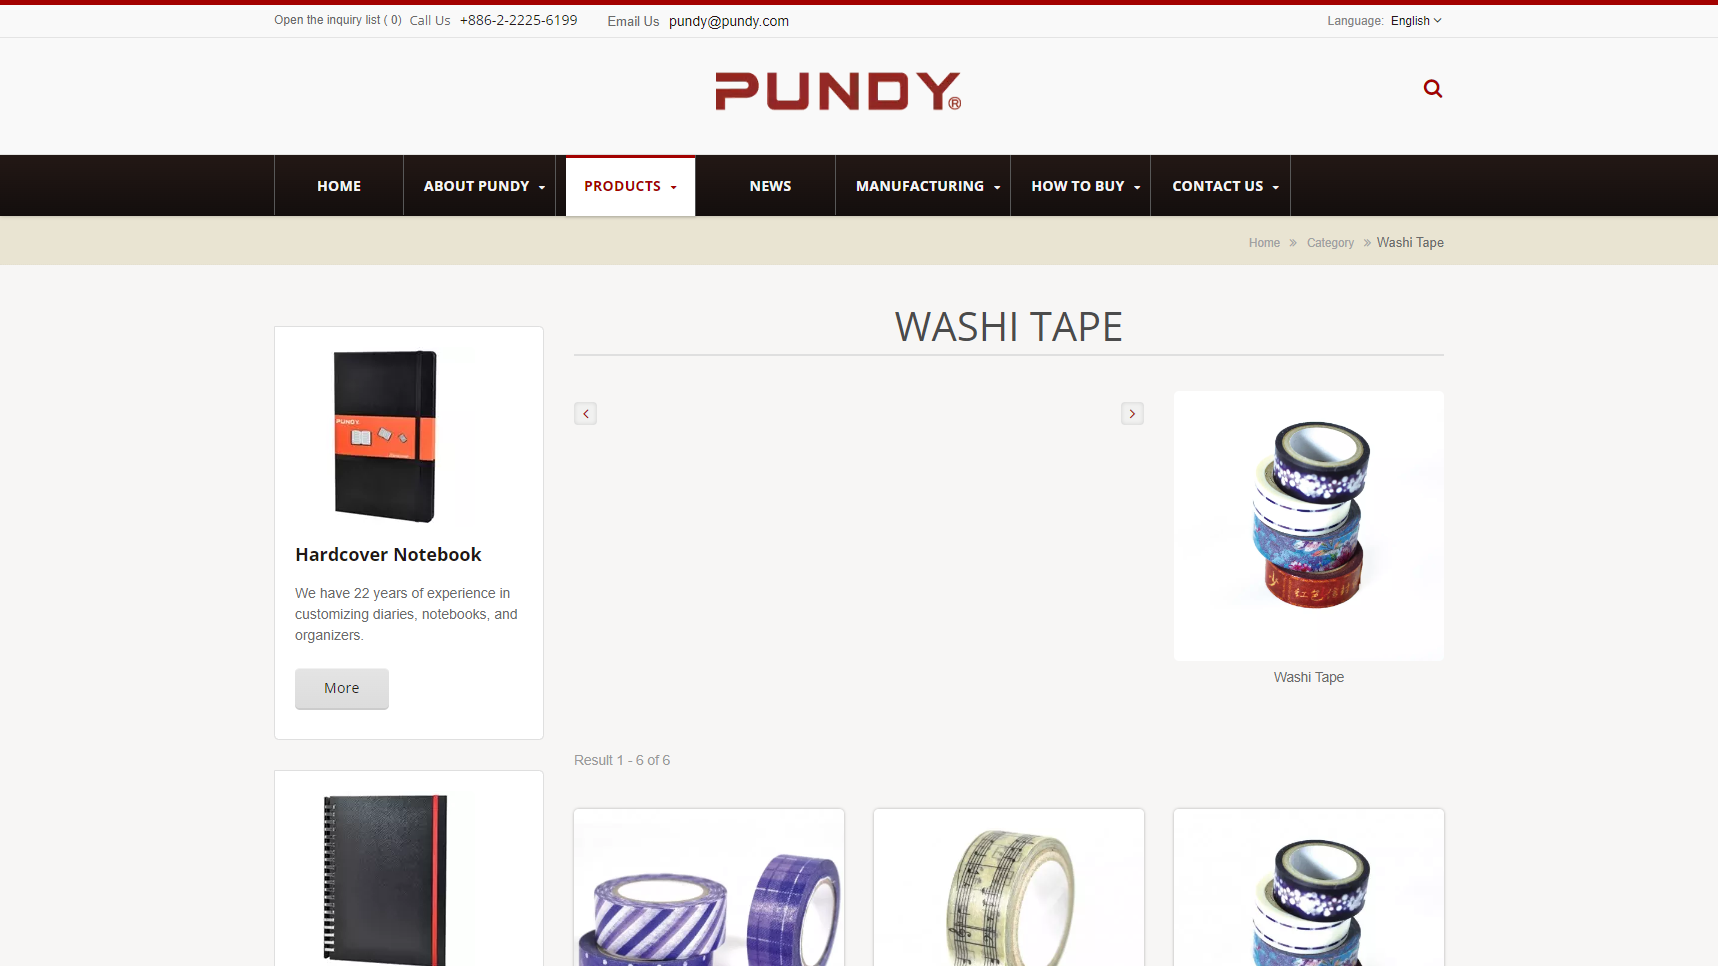 PUNDY - Washi Tape Manufacturer